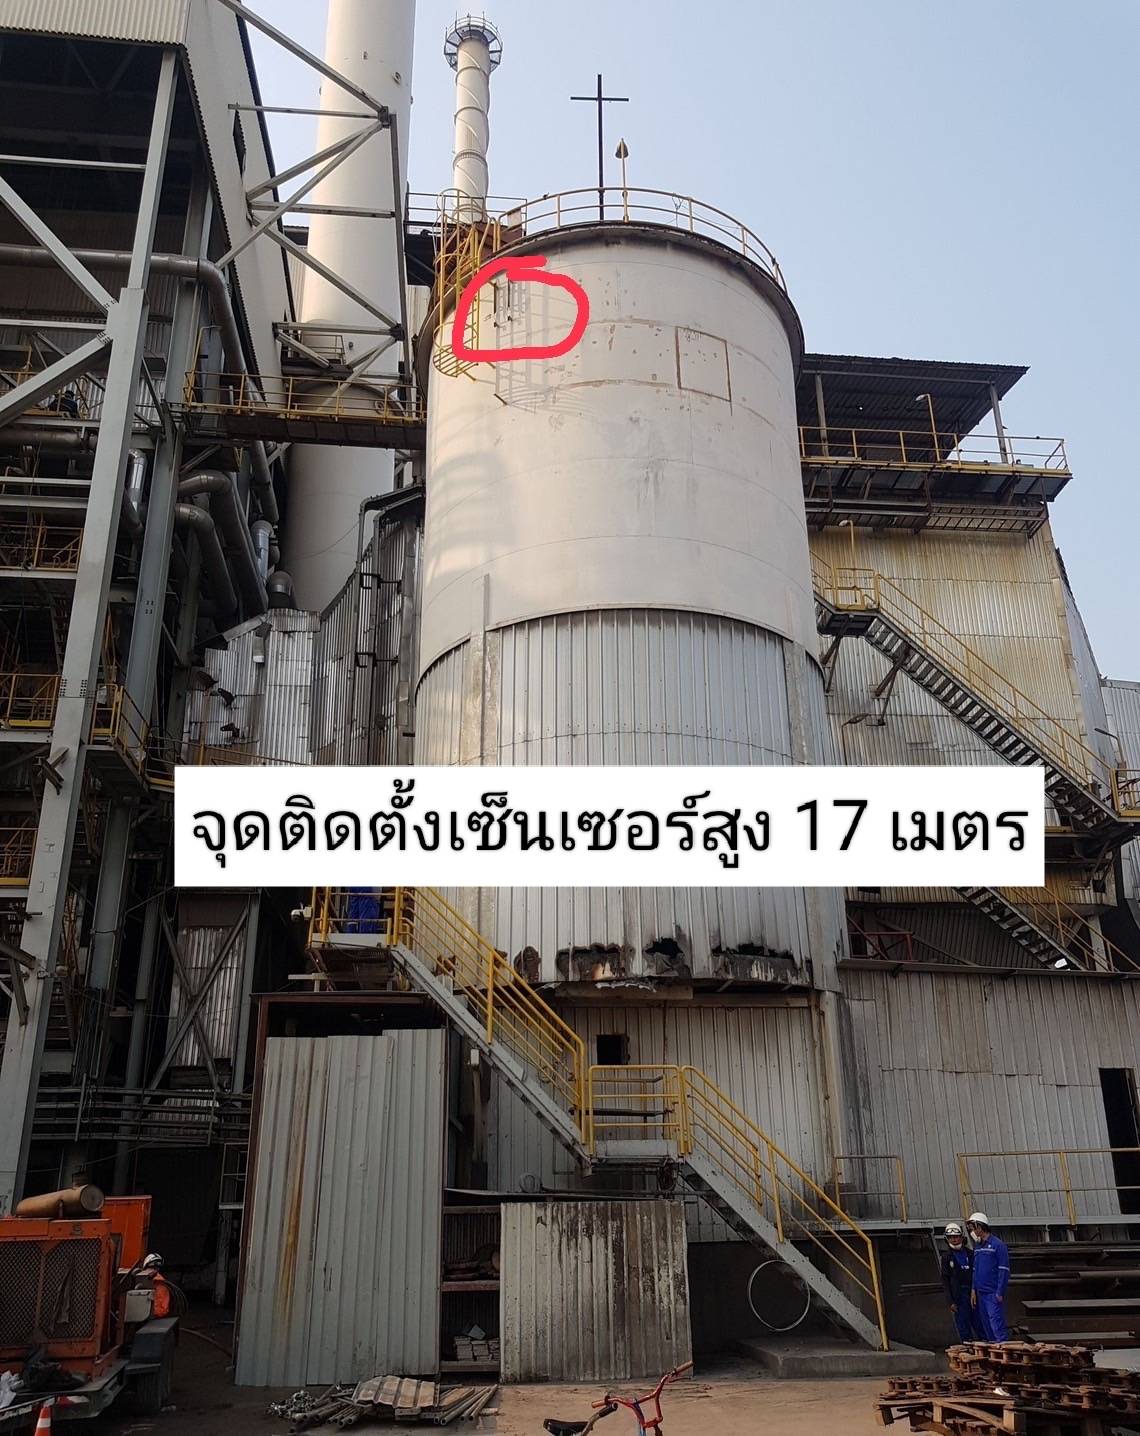 ปราจีนบุรี-( คืบหน้า)วัตถุกัมมันตรังสี ซีเซียม 137 หายปริศนาจากโรงไฟฟ้า